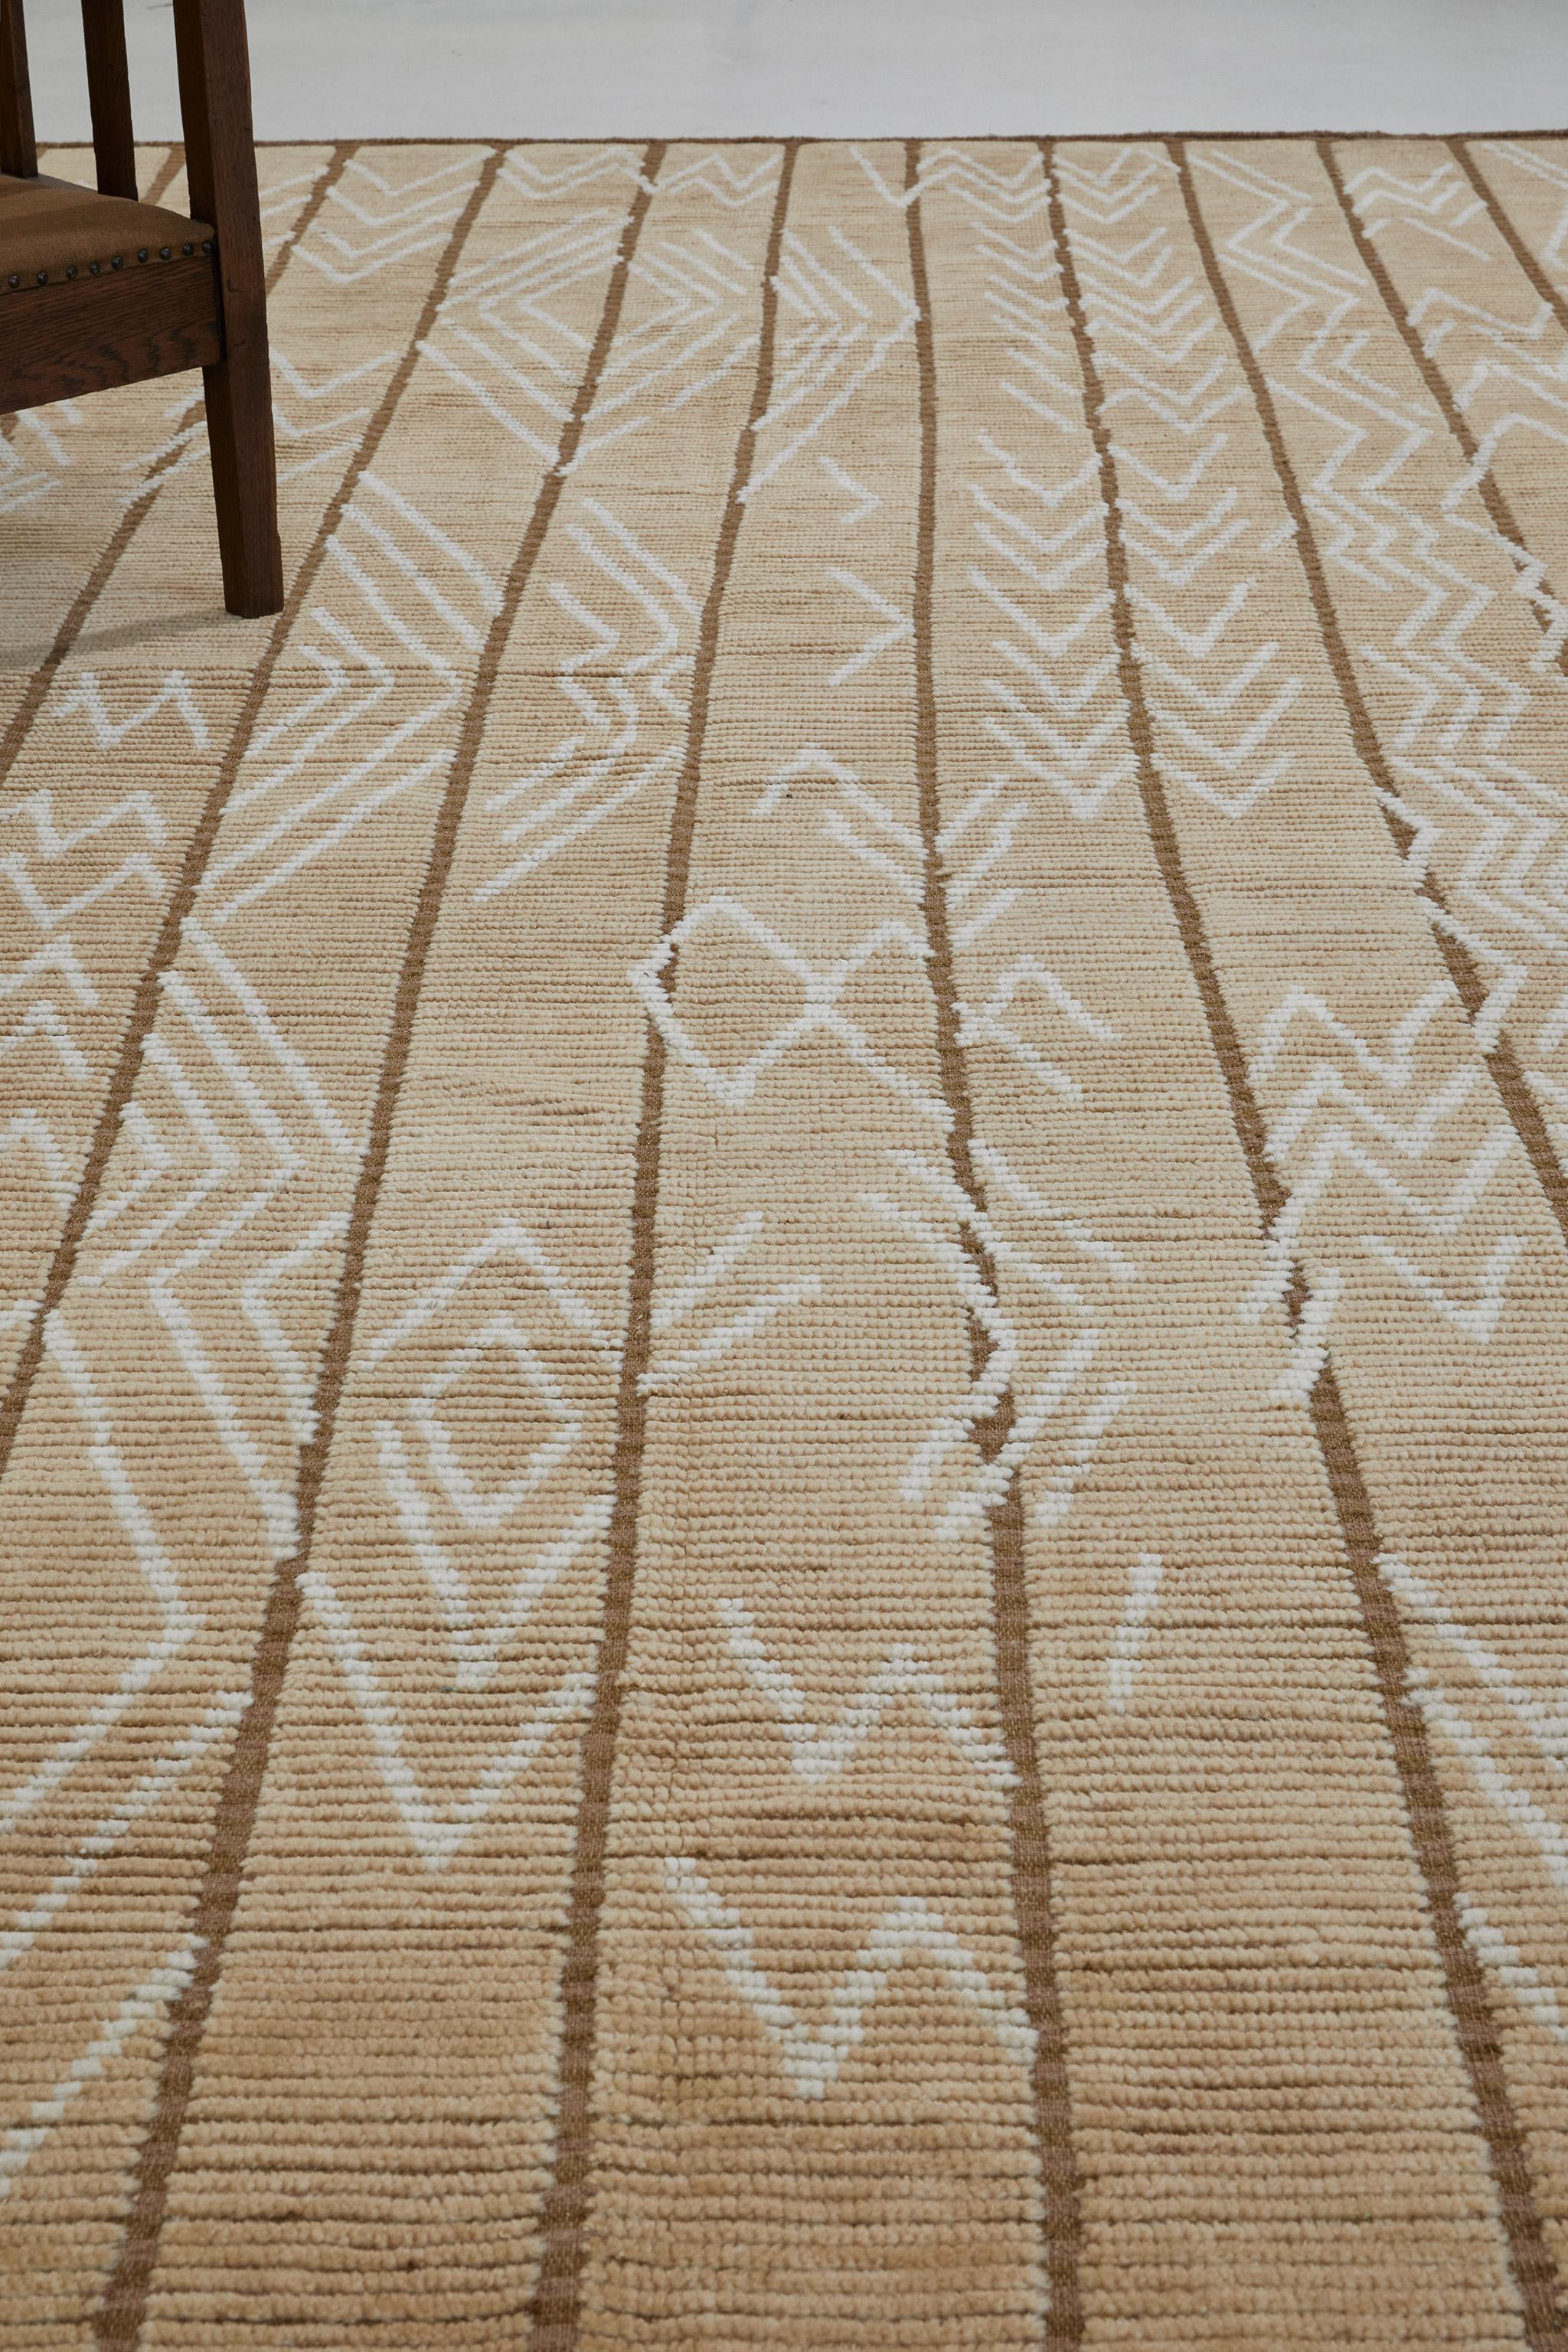 Bänder aus Zierflor mit eklektischem Chevron-Muster, unterteilt durch vertikale Streifen aus buntem Flachgewebe. Mourvedre ist von nordafrikanischen Textilien inspiriert. Hier in warmen Brauntönen.

Die Estancia Collection von Mehraban ist eine